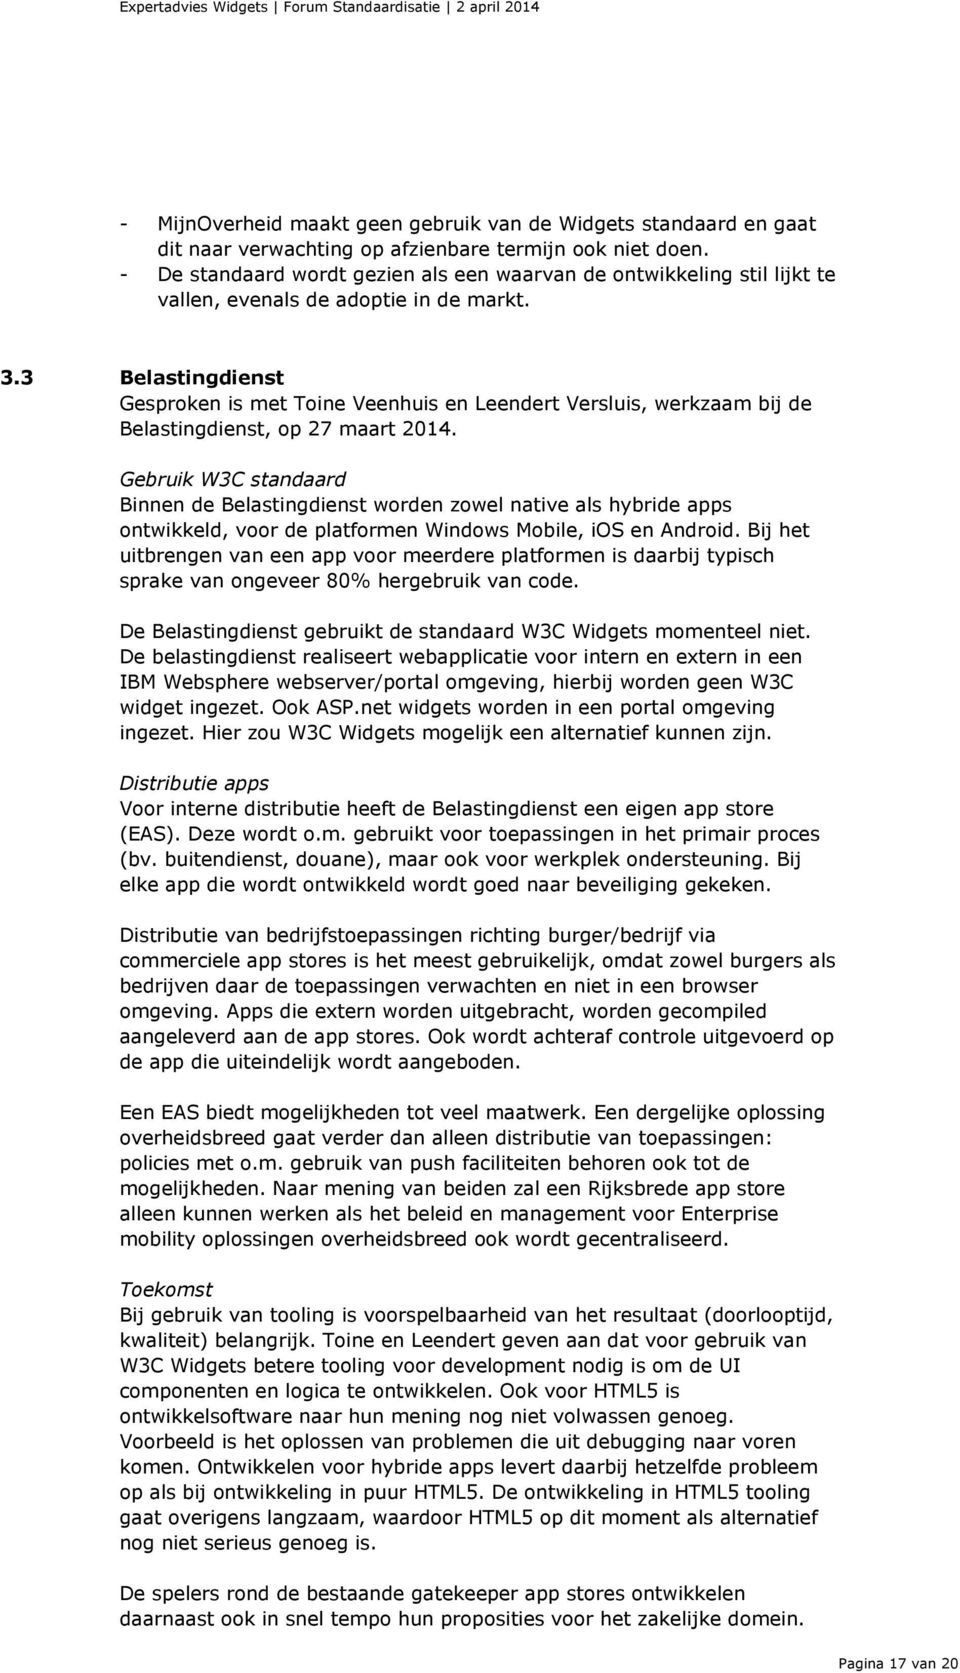 3 Belastingdienst Gesproken is met Toine Veenhuis en Leendert Versluis, werkzaam bij de Belastingdienst, op 27 maart 2014.